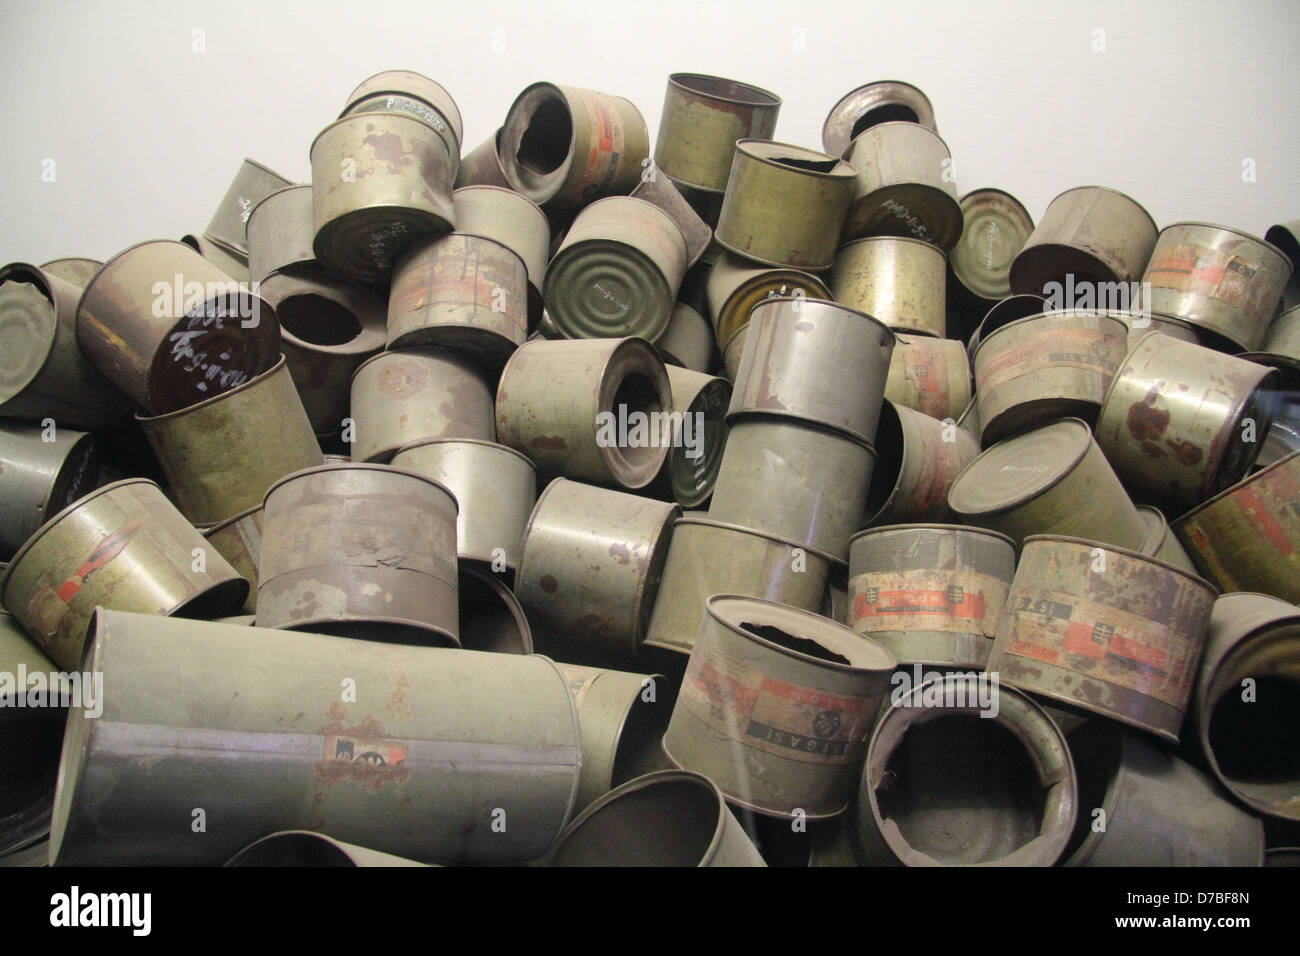 Vuoto gas velenosi i barattoli di Zyklon B che sono stati utilizzati dai nazisti a veleno prigionieri in campi di sterminio Foto Stock